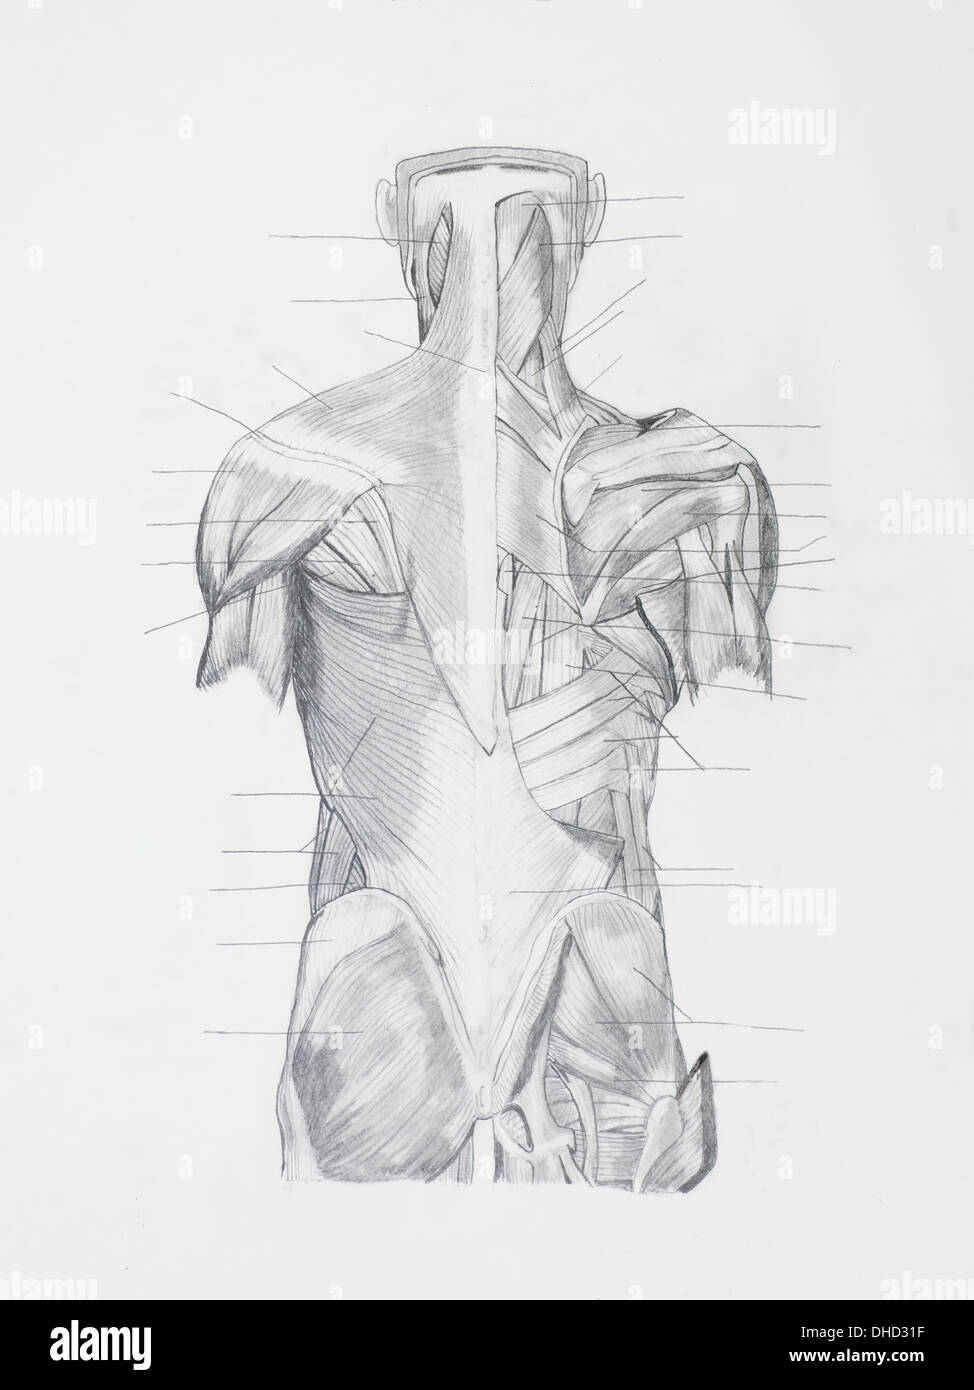 Dettaglio della schiena muscoli hunam disegno a matita su carta bianca Foto Stock